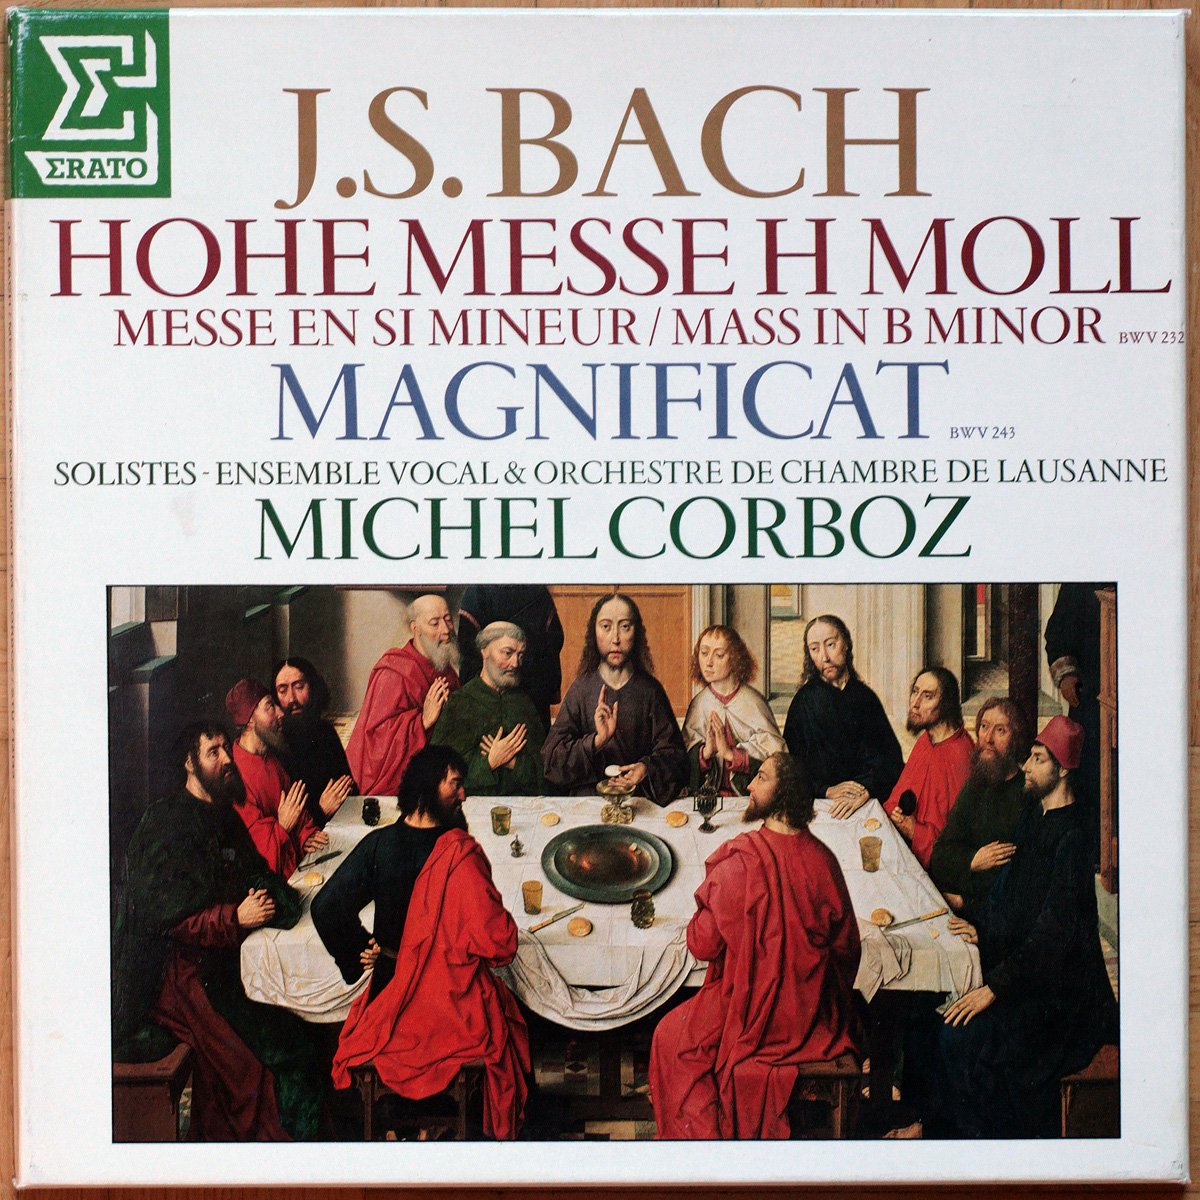 Bach • Messe en Si Mineur – BWV 232 • Magnificat – BWV 243 • Erato STU 713143 • Ensemble vocal & Orchestre de chambre de Lausanne • Michel Corboz